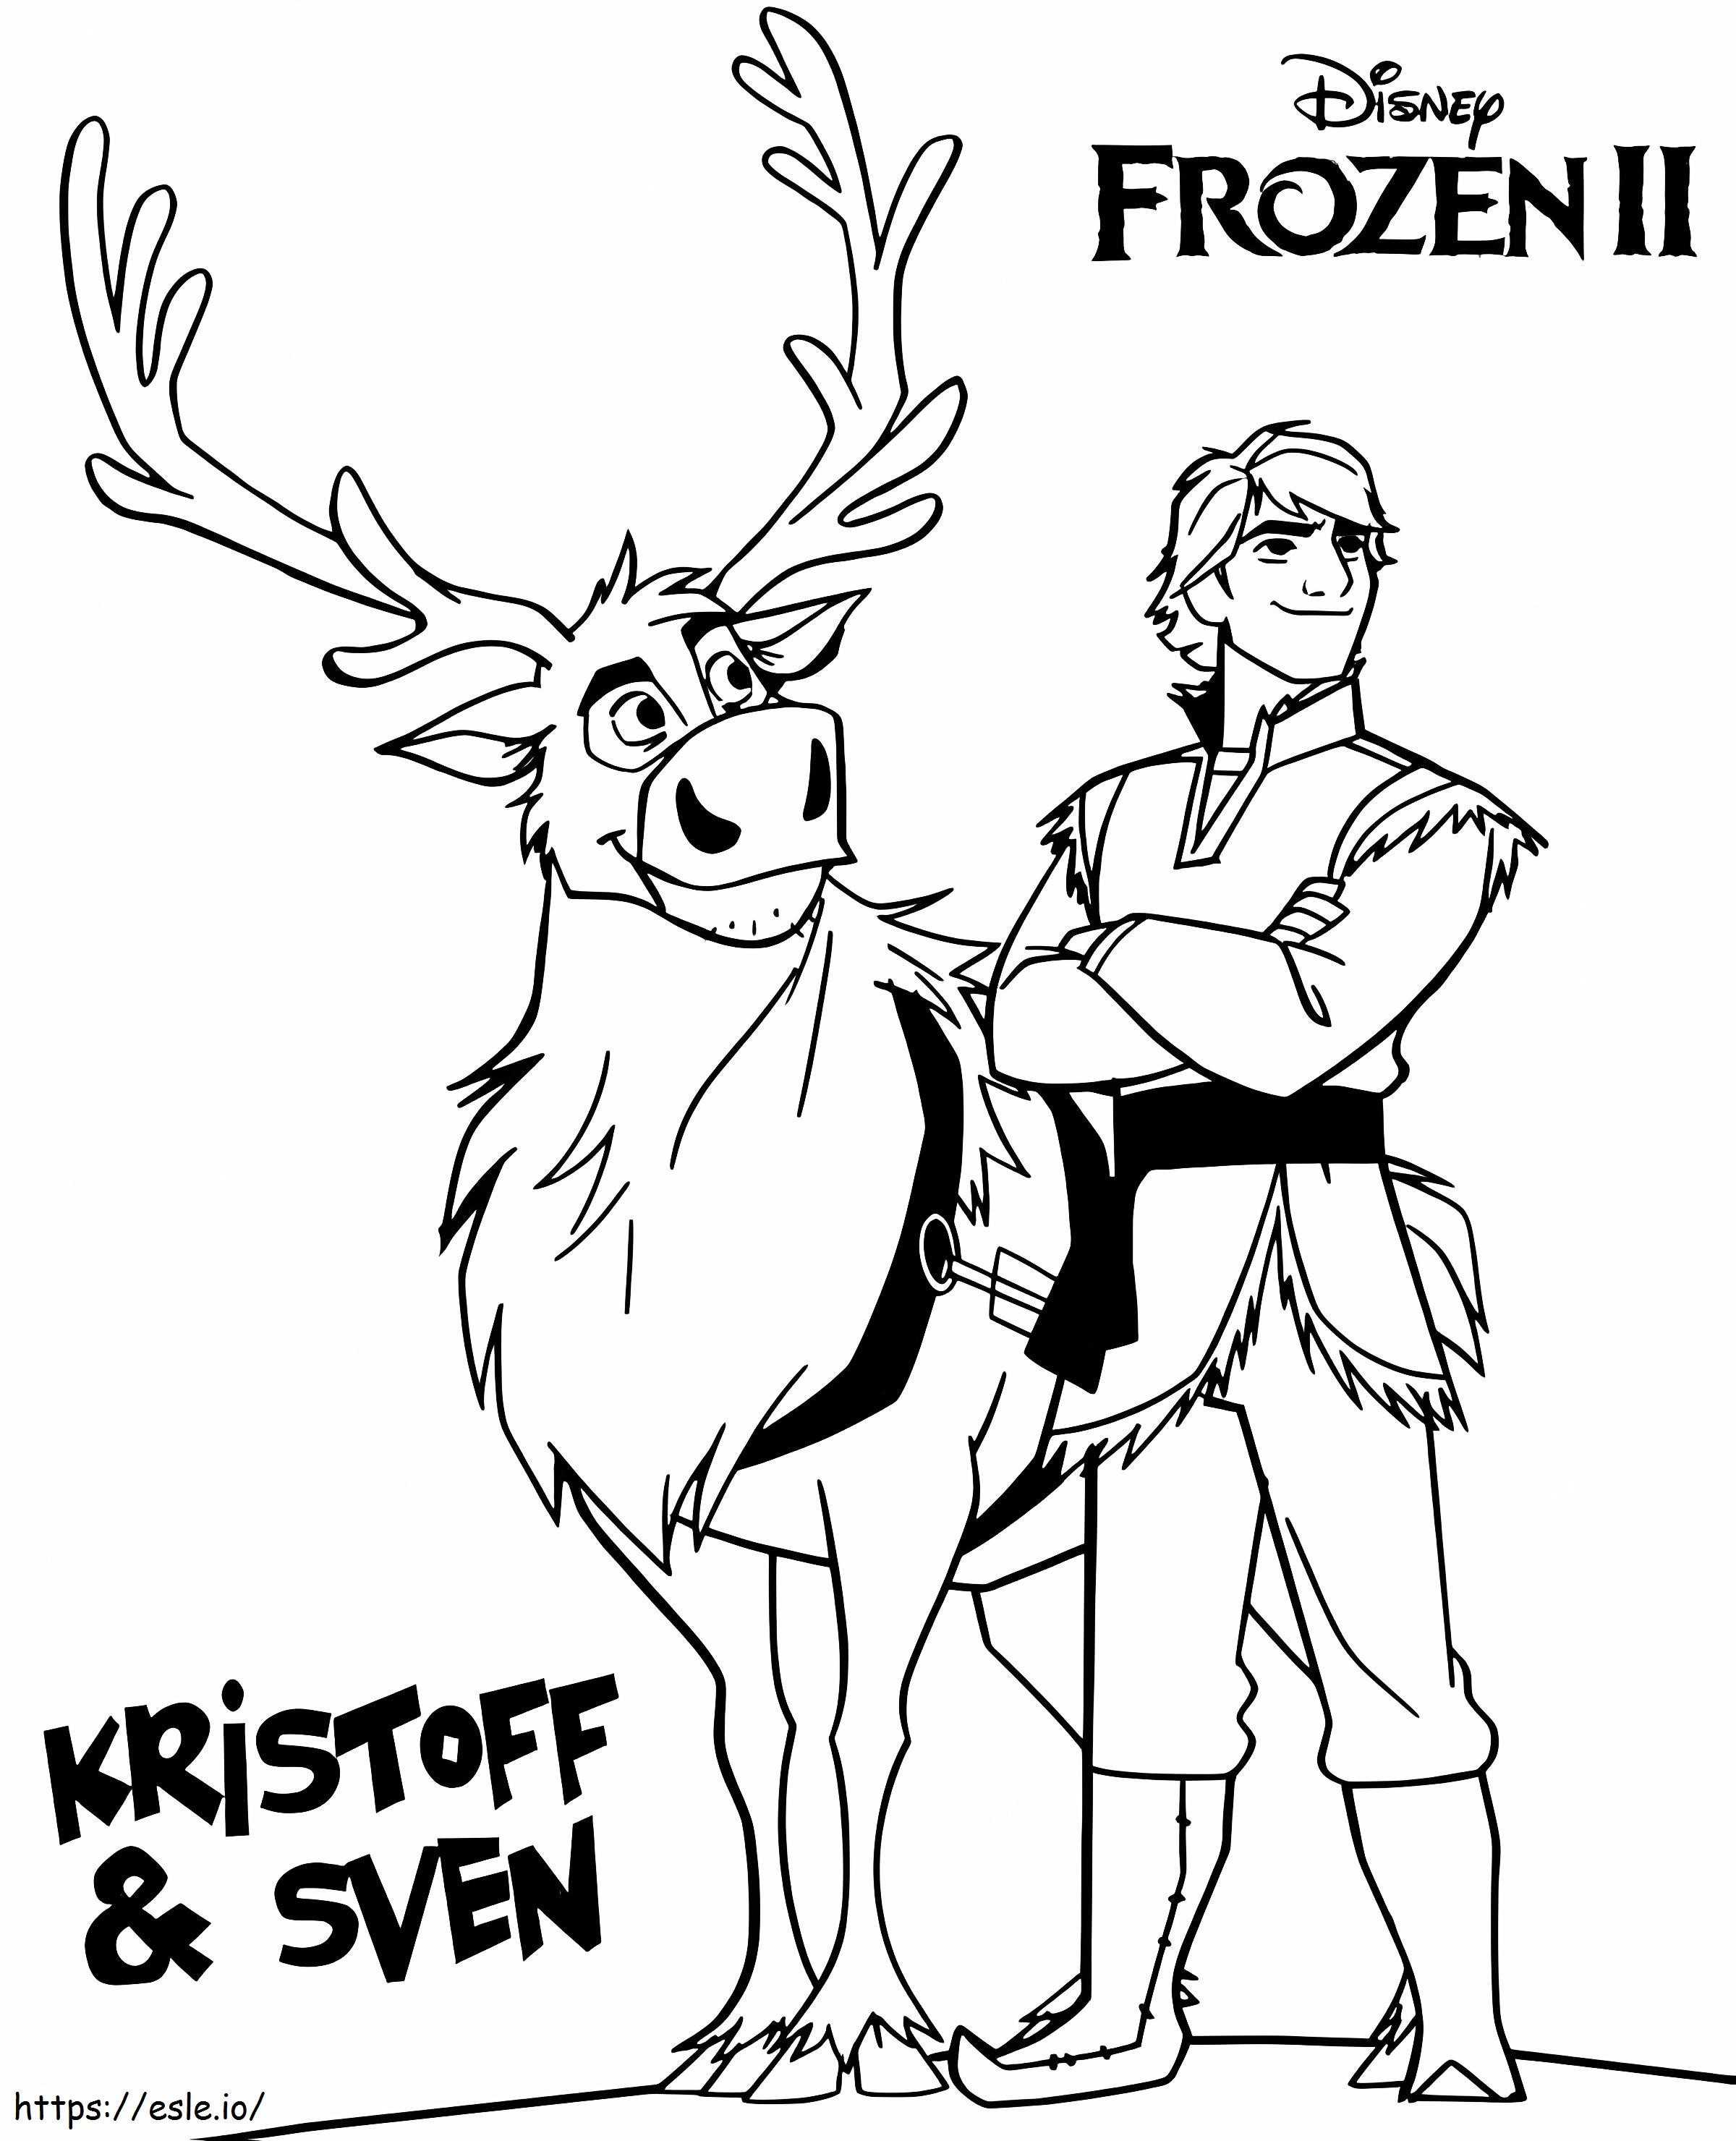 Kristoff Con Sven coloring page